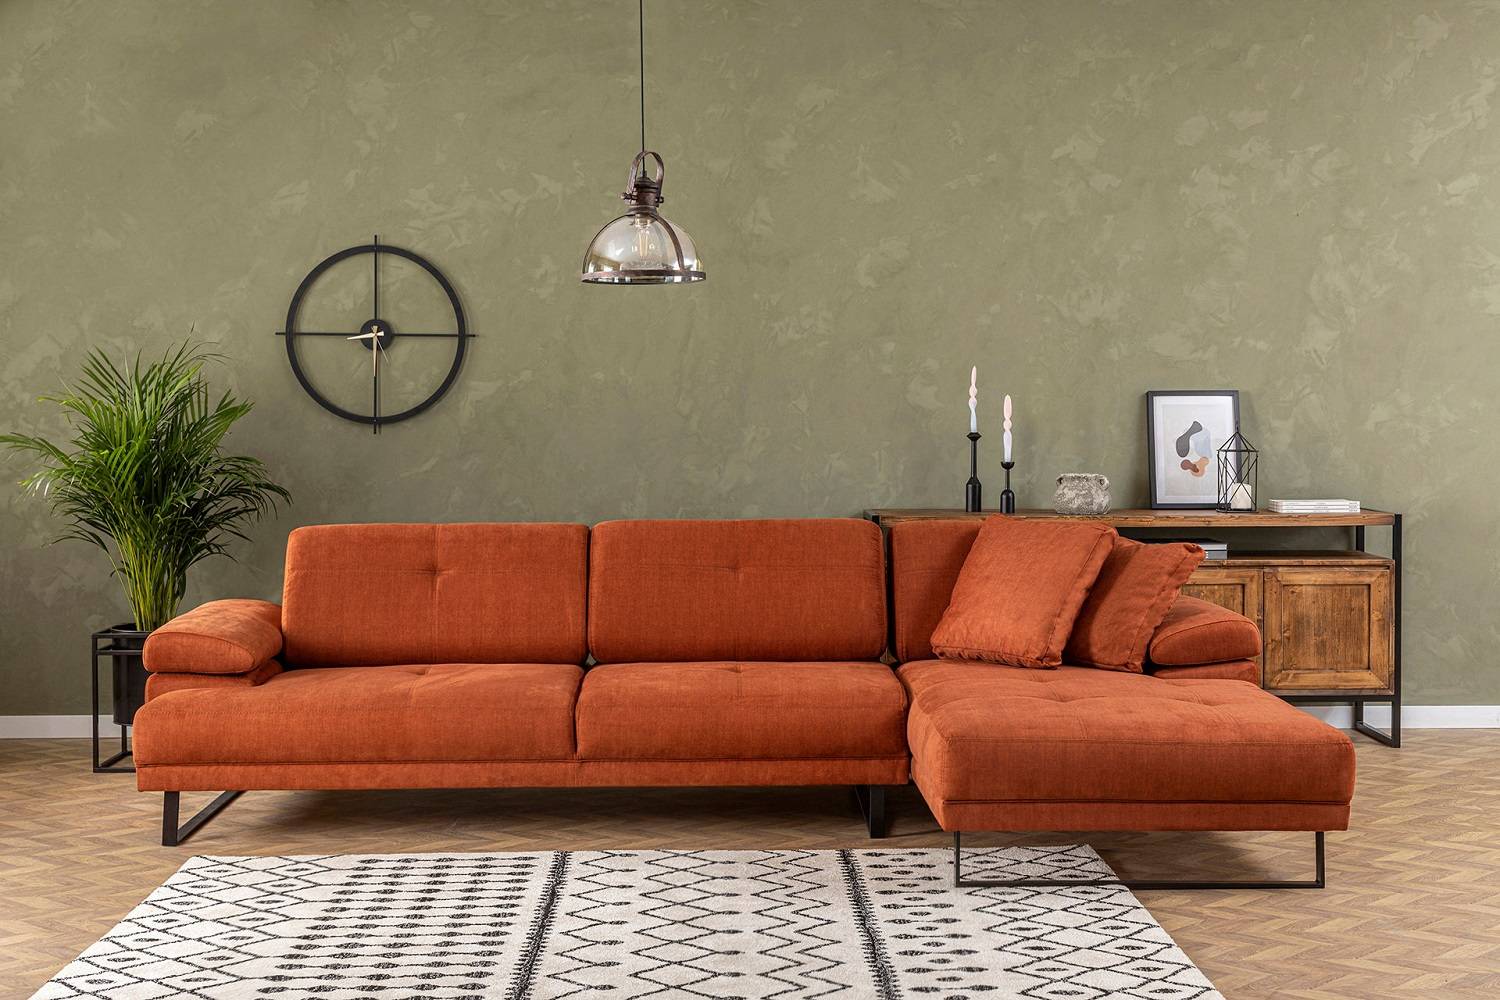 Sofahouse Designová rohová sedačka Vatusia 314 cm oranžová - pravá